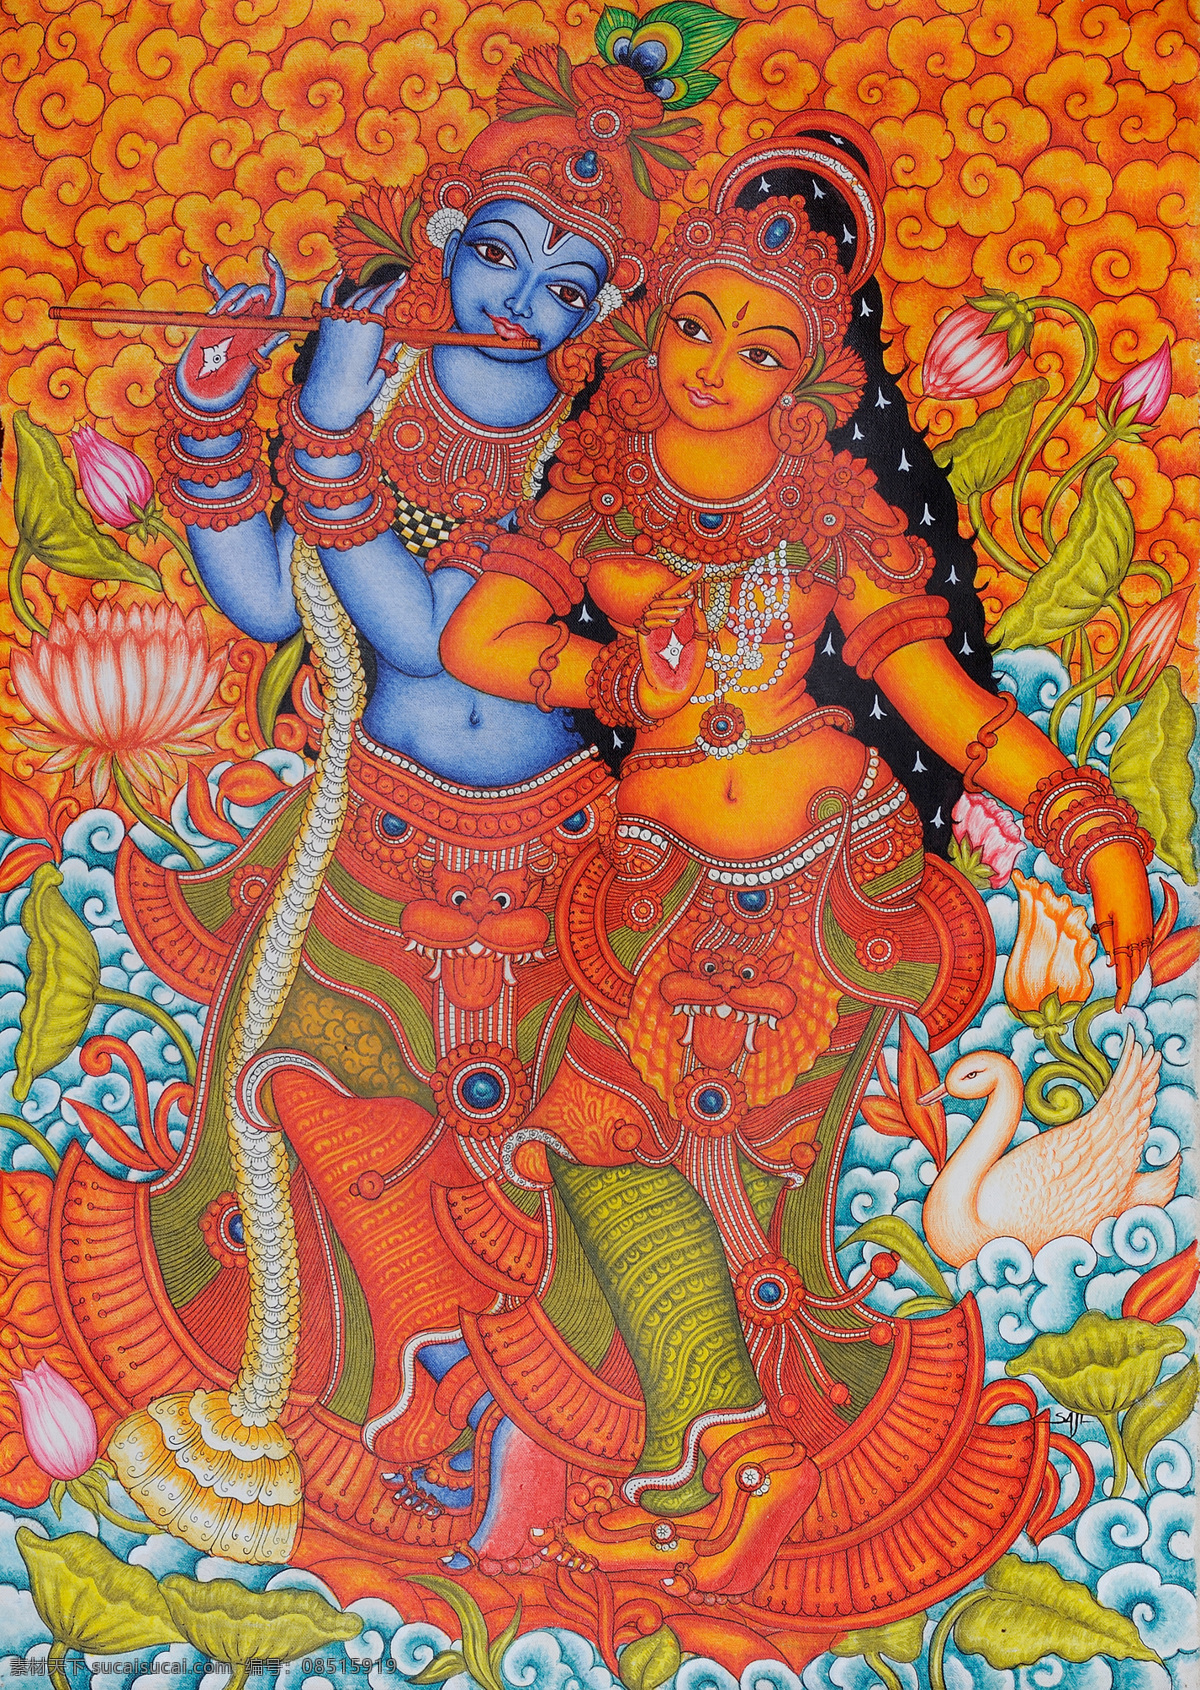 印度人物形象 人物 吹笛子 王子和公主 天鹅 莲花池 宗教信仰 宗教 文化艺术 传统文化